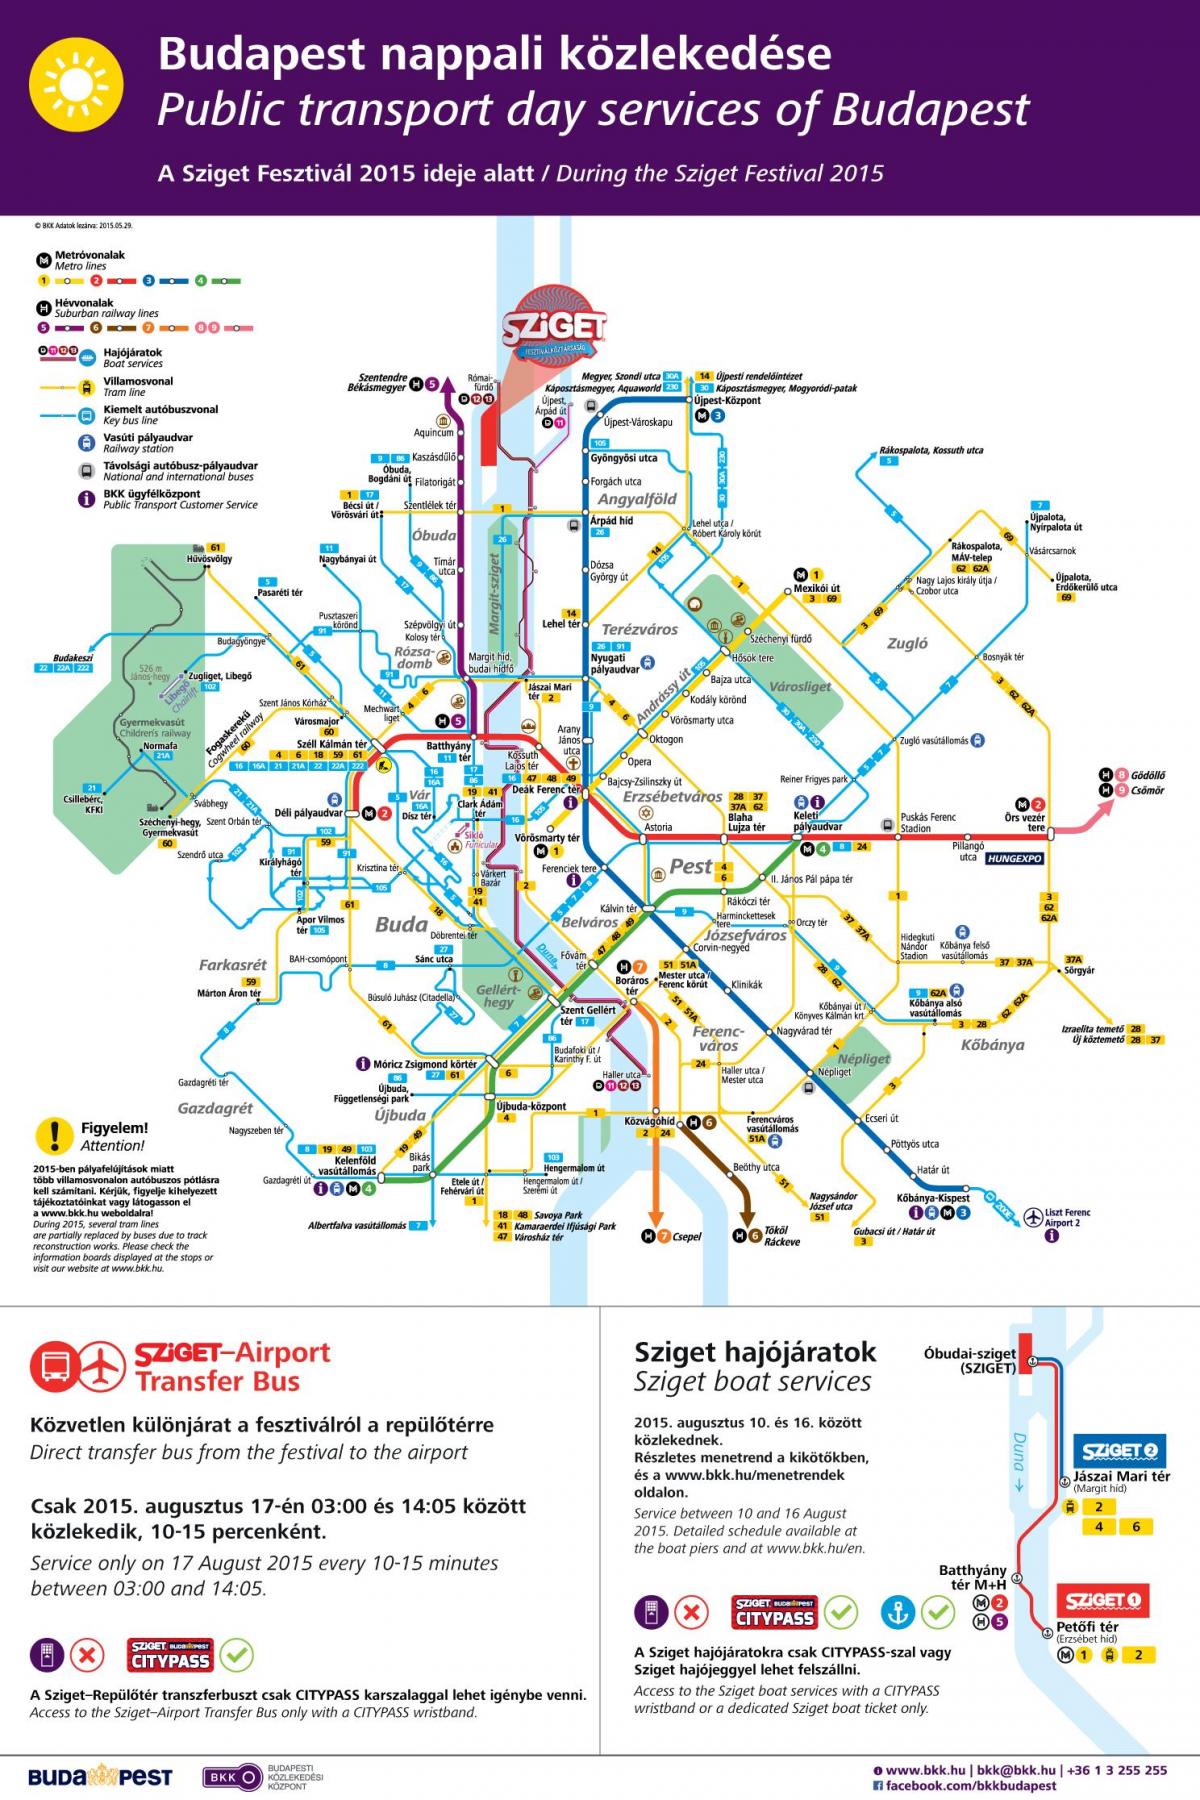 布达佩斯的路面电车的地图